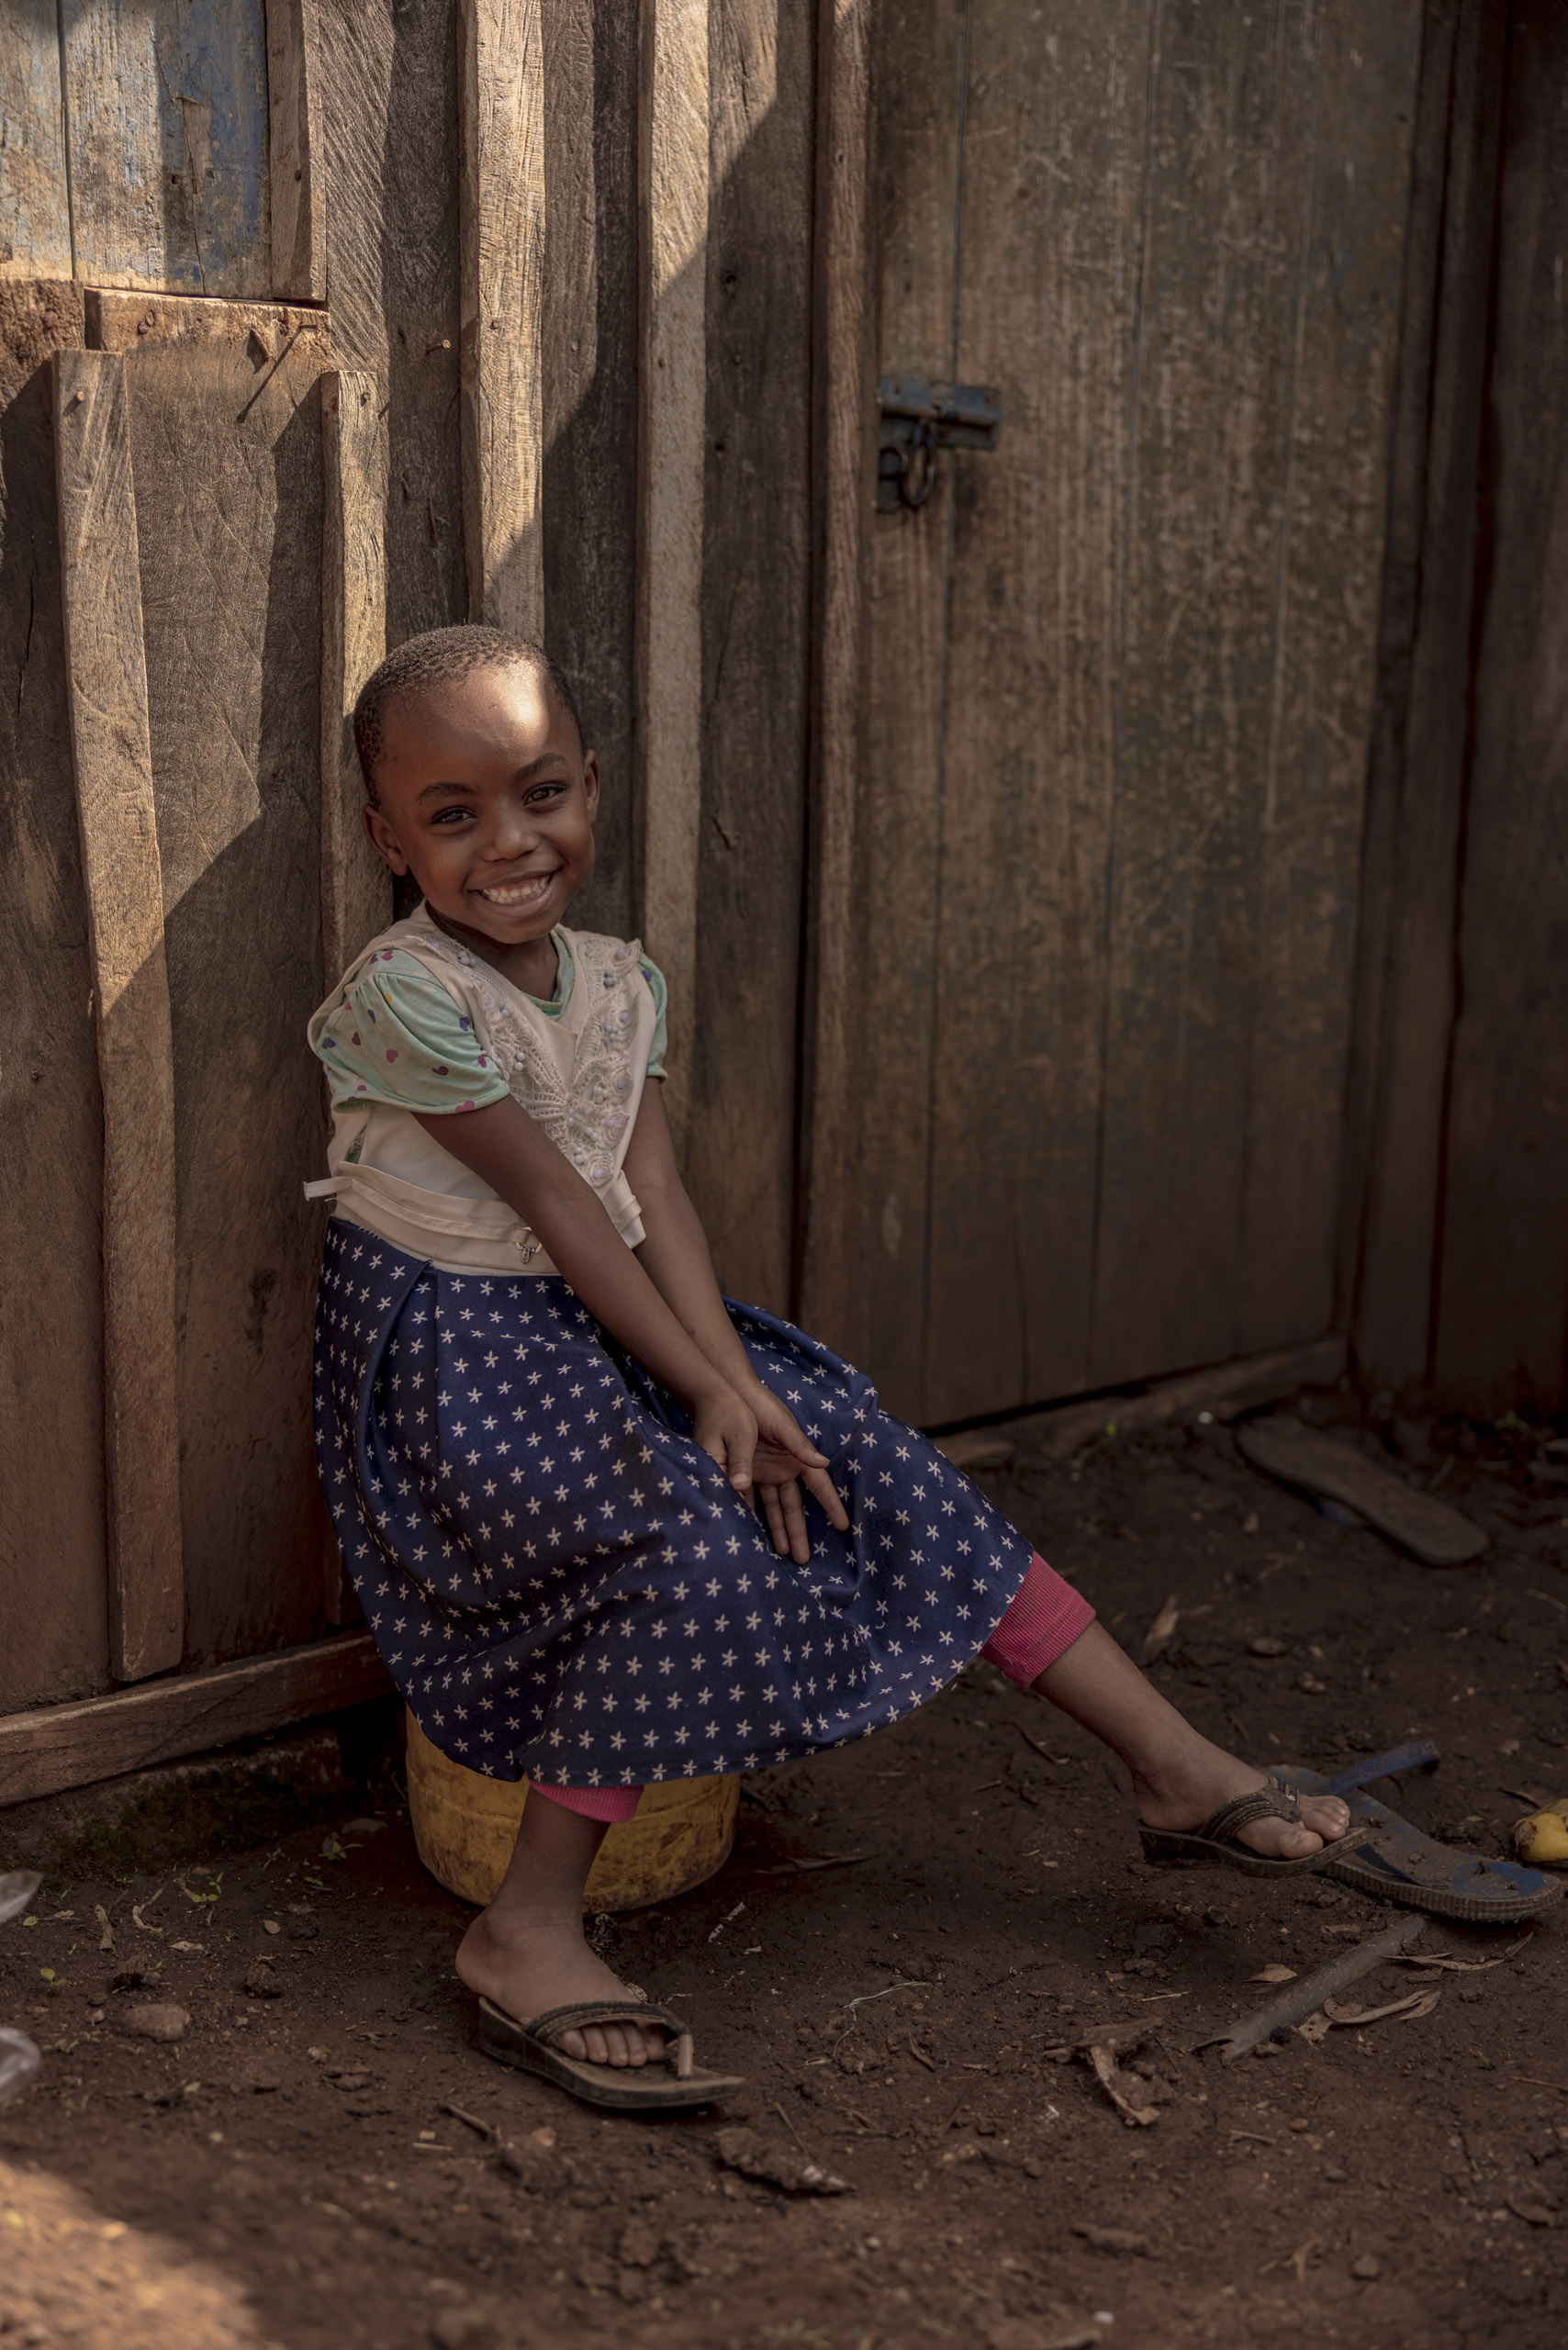 Ein junges Mädchen mit einem fröhlichen Lächeln hockt in einer sonnigen, rustikalen Umgebung vor einer Holztür, bekleidet mit einem gepunkteten Rock und Flip-Flops. © Fotografie Tomas Rodriguez